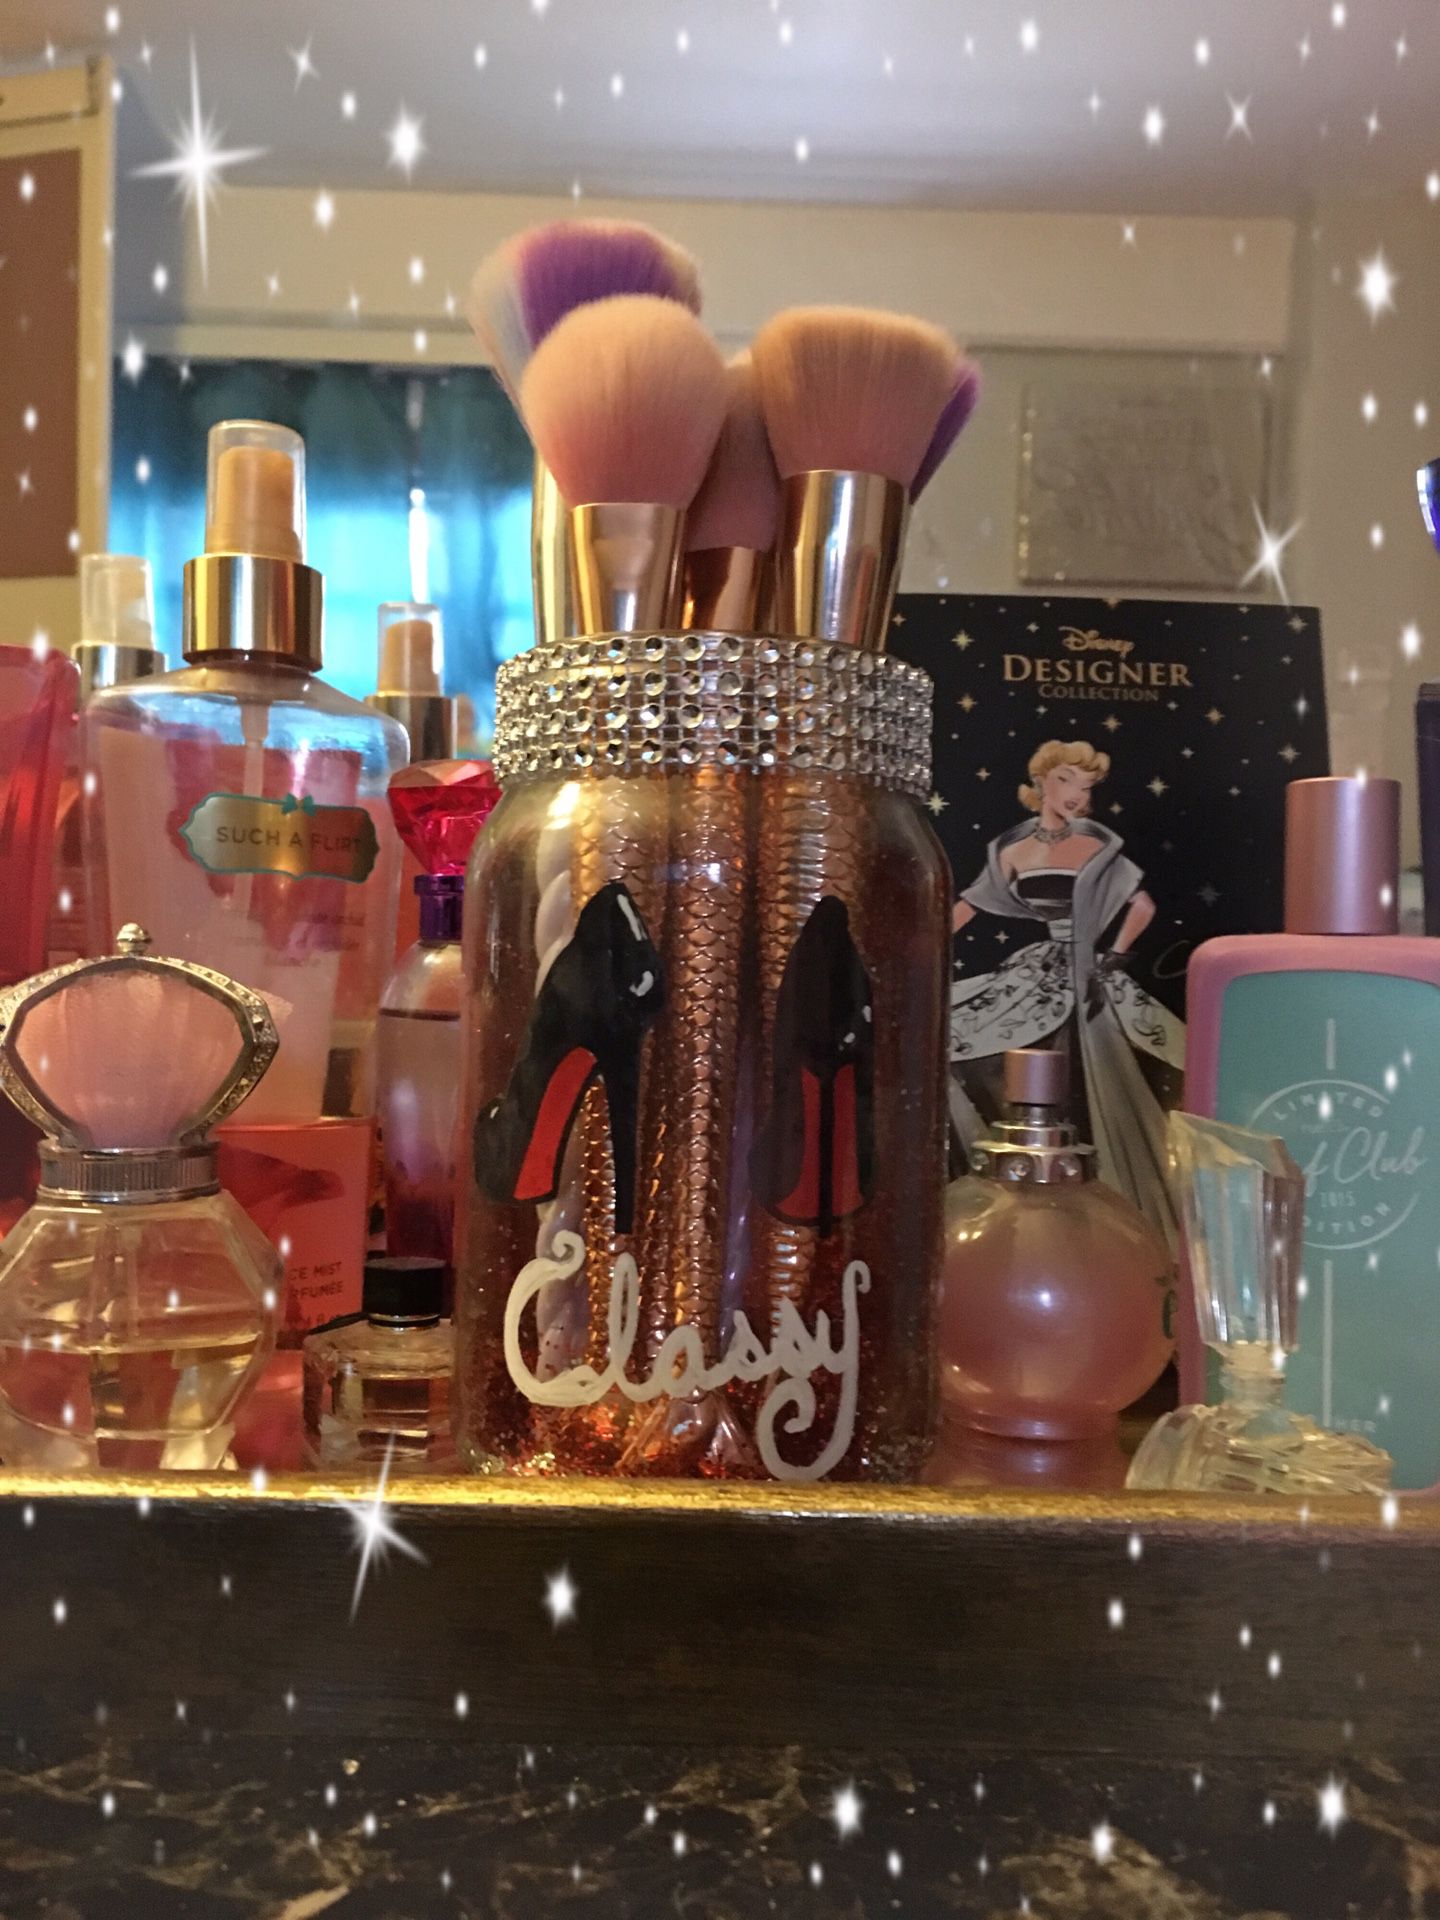 Customized makeup brush jar “Classy”